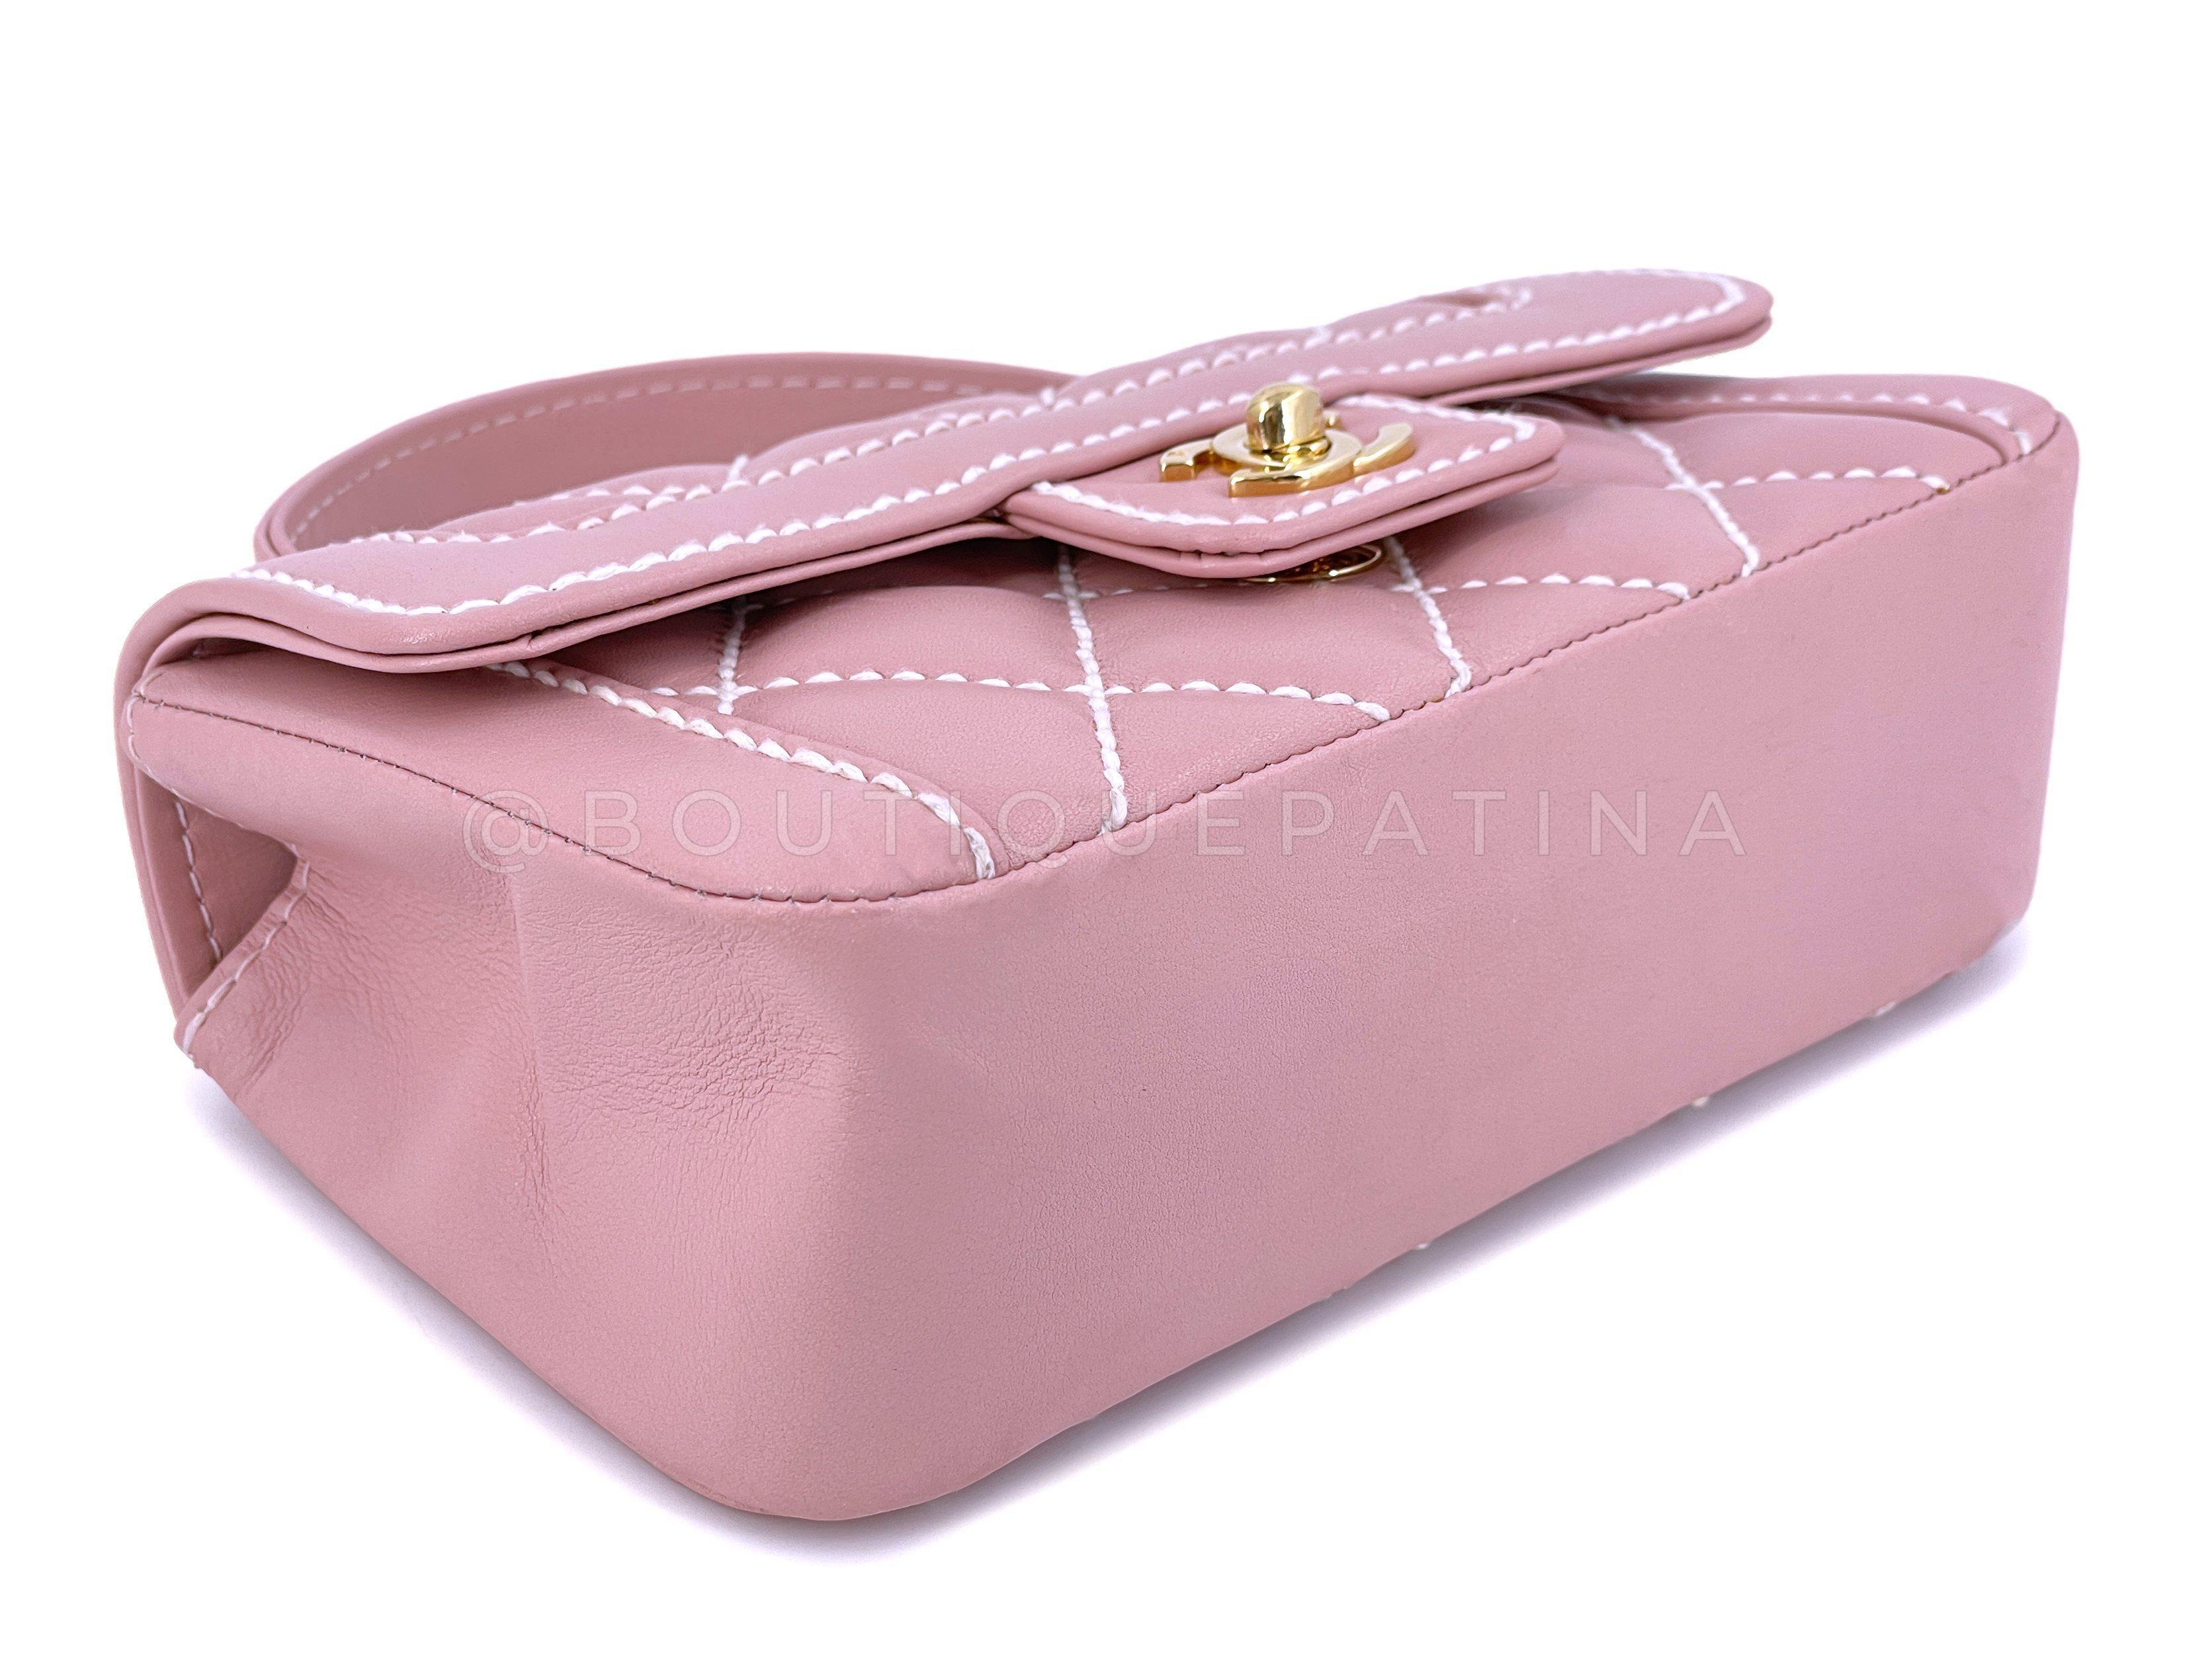 Rare Chanel Mauve Pink Wild Stitch Surpique Baby Flap Bag 66463 For Sale 1